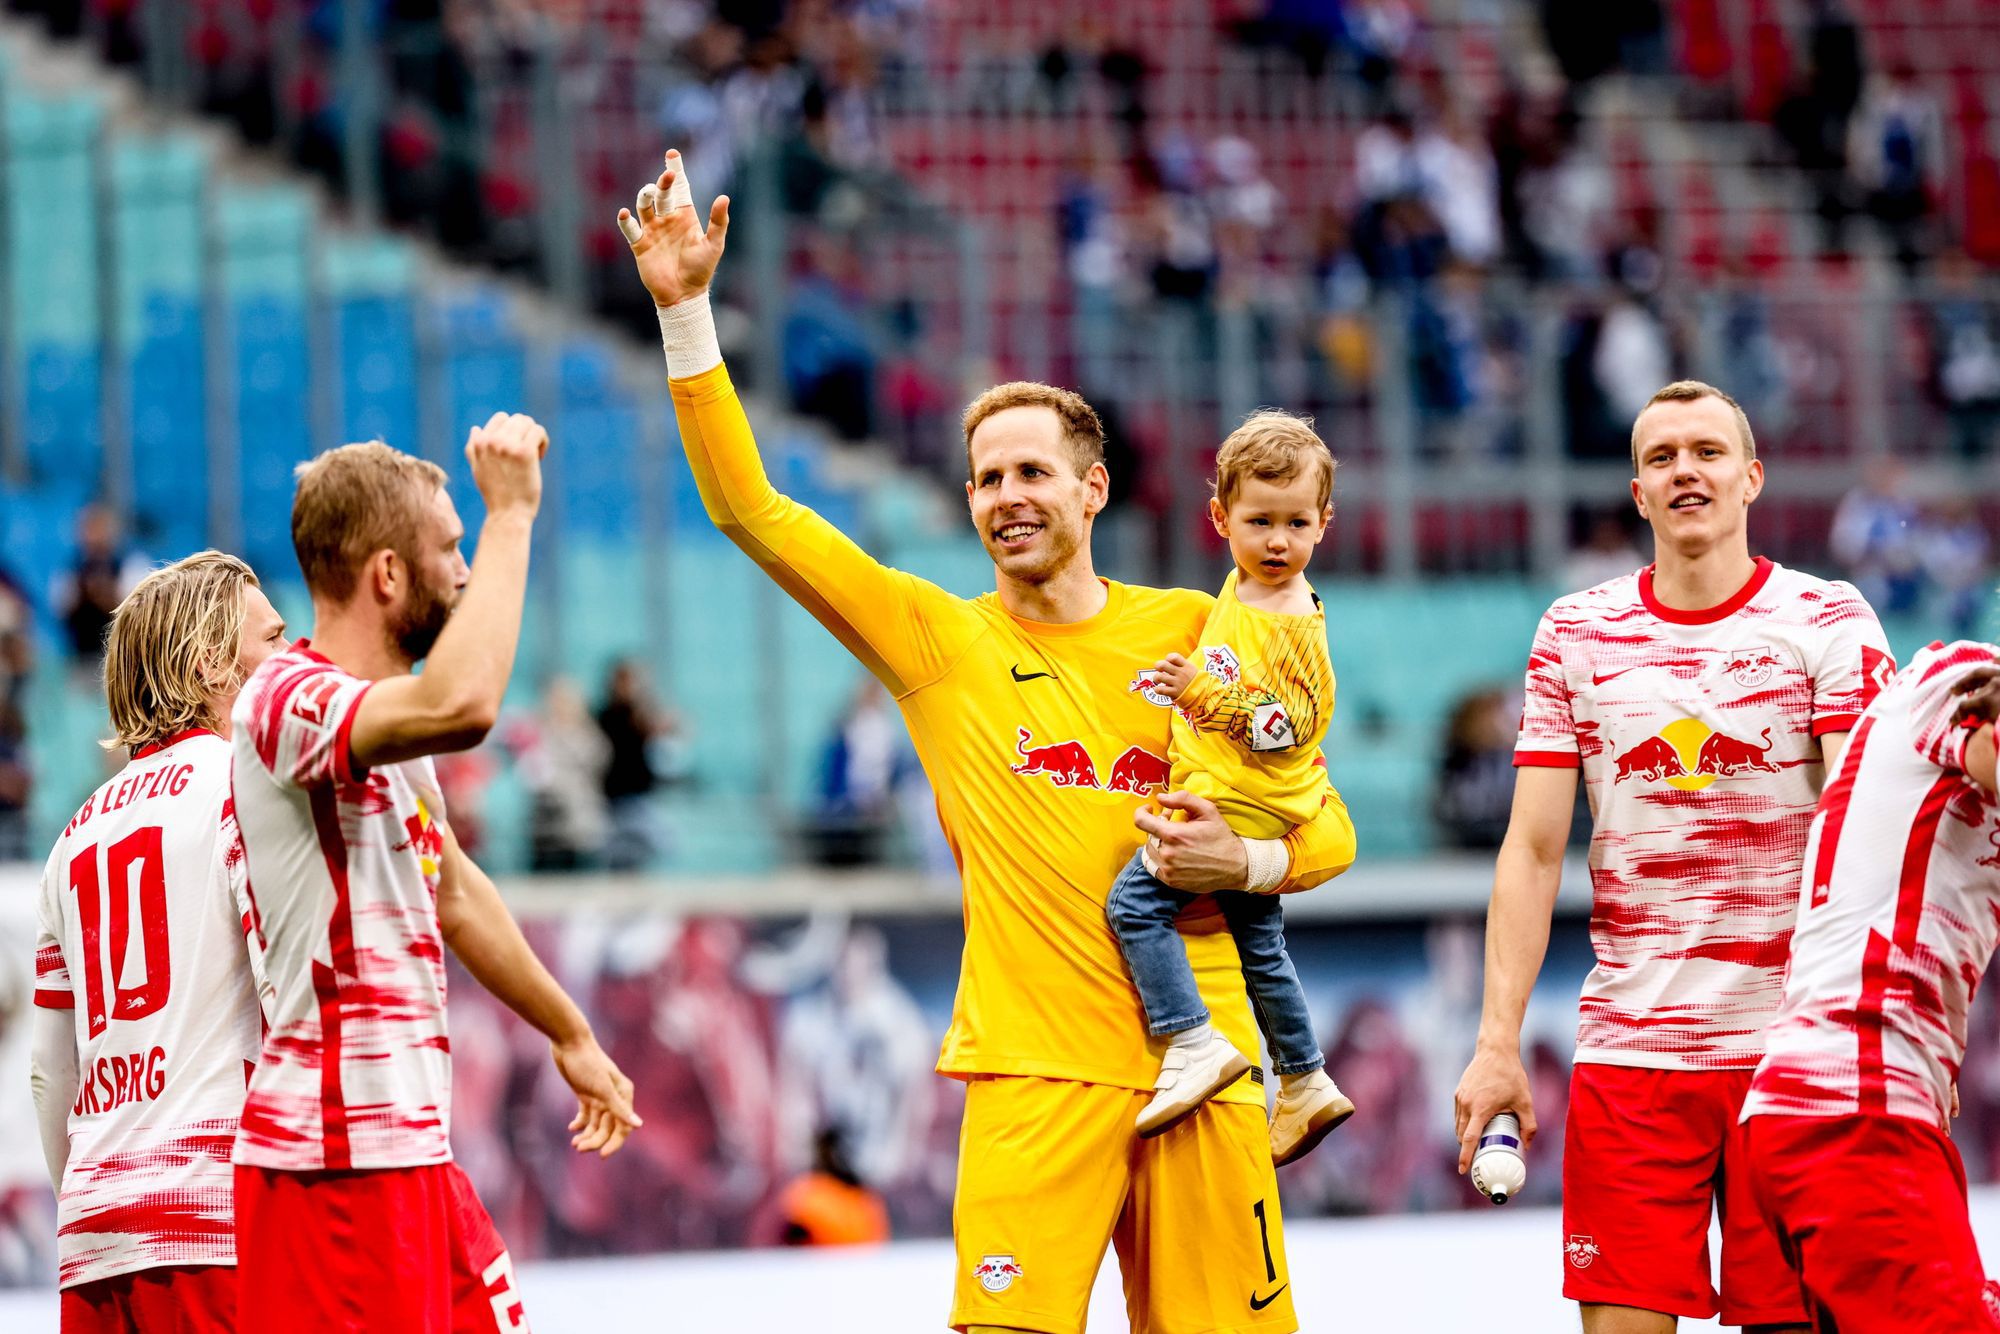 Gulácsi Péter, az RB Leipzig kapusa kisfiával a karján, miután csapata 6-0-ra győzött a Hertha BSC ellen. / Fotó: MTI/EPA/Filip Singer